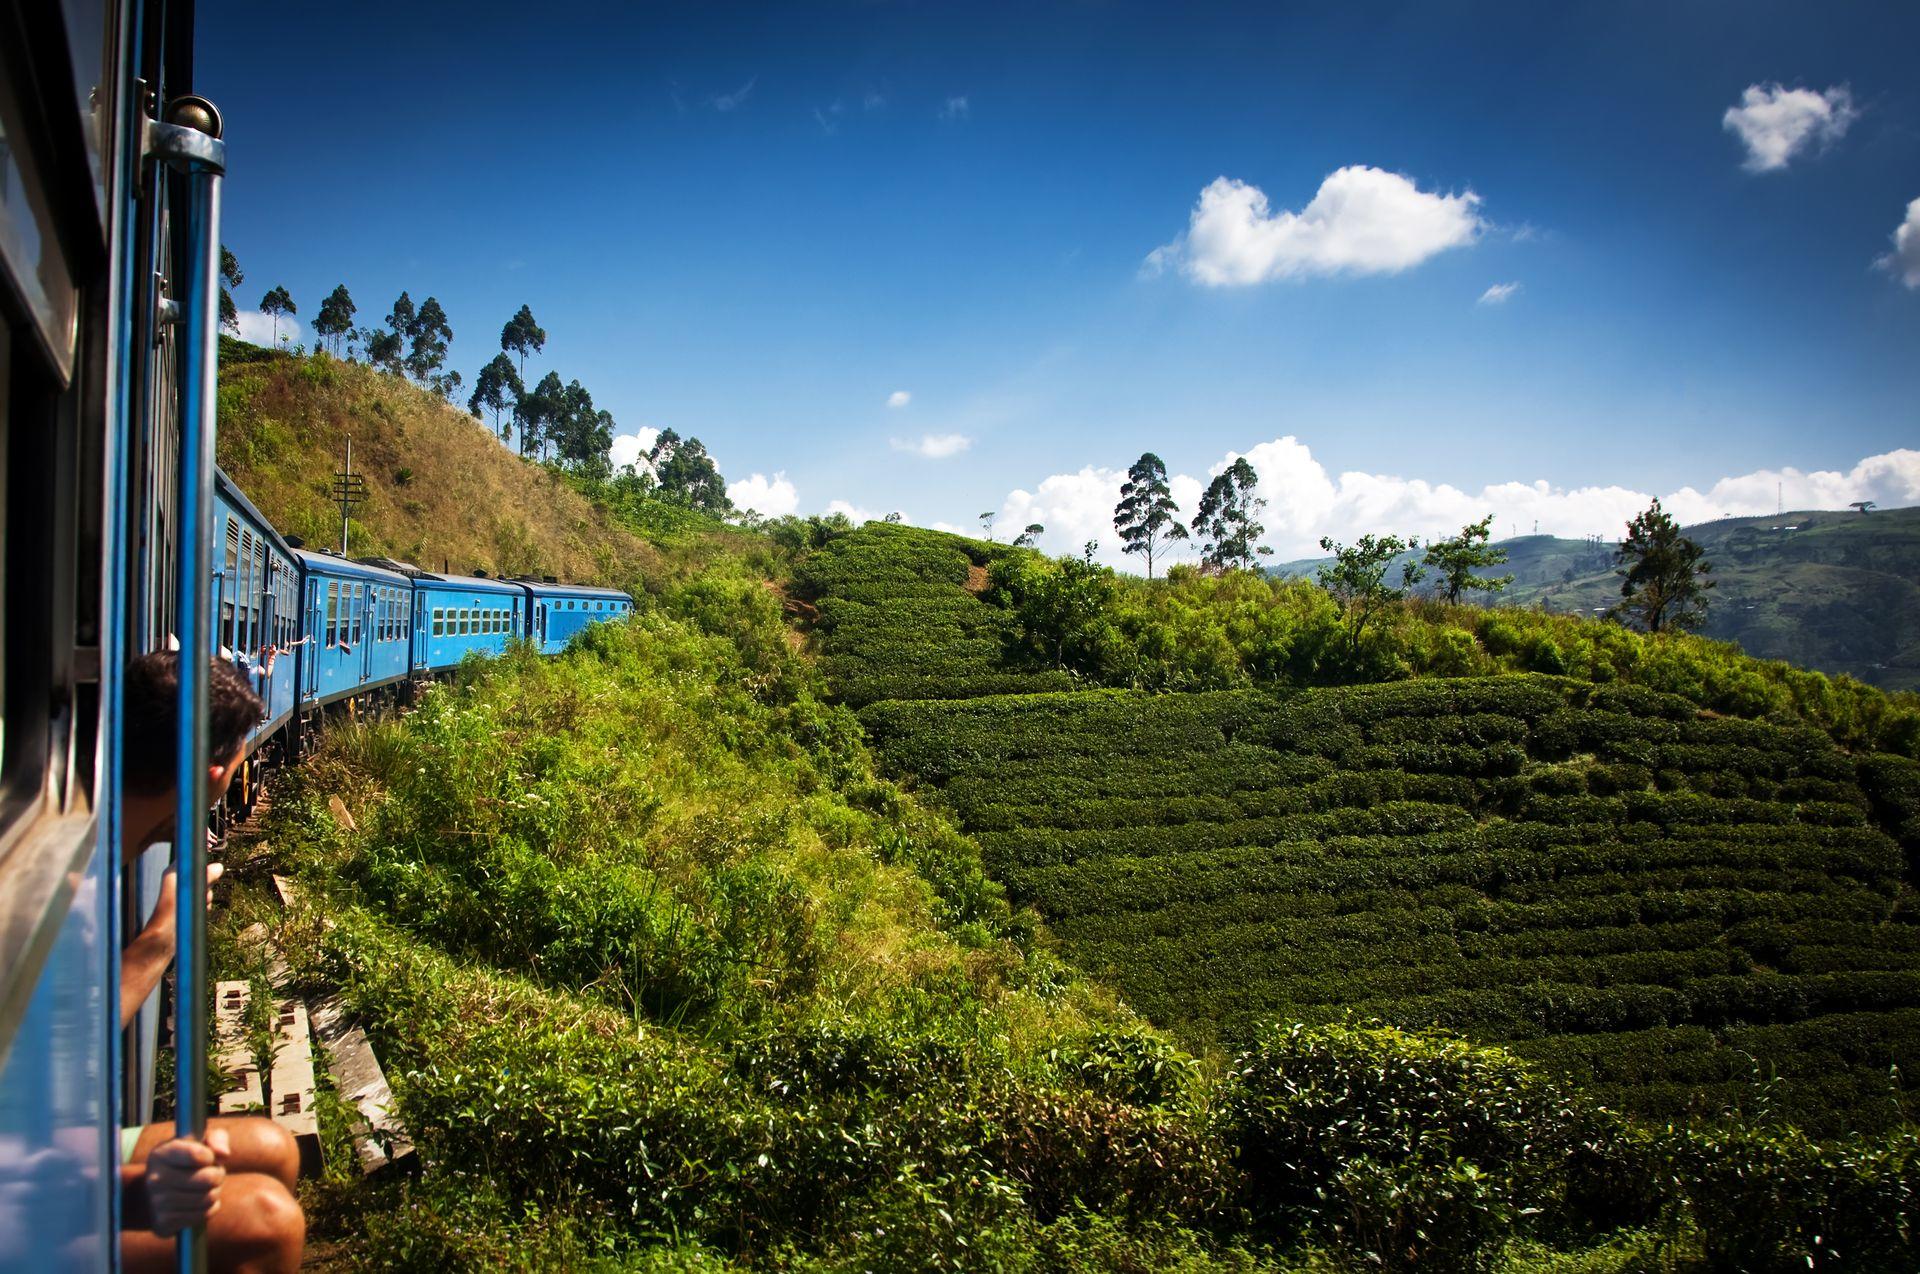 niebieski pociąg przejeżdżający przez zielona plantację herbaty